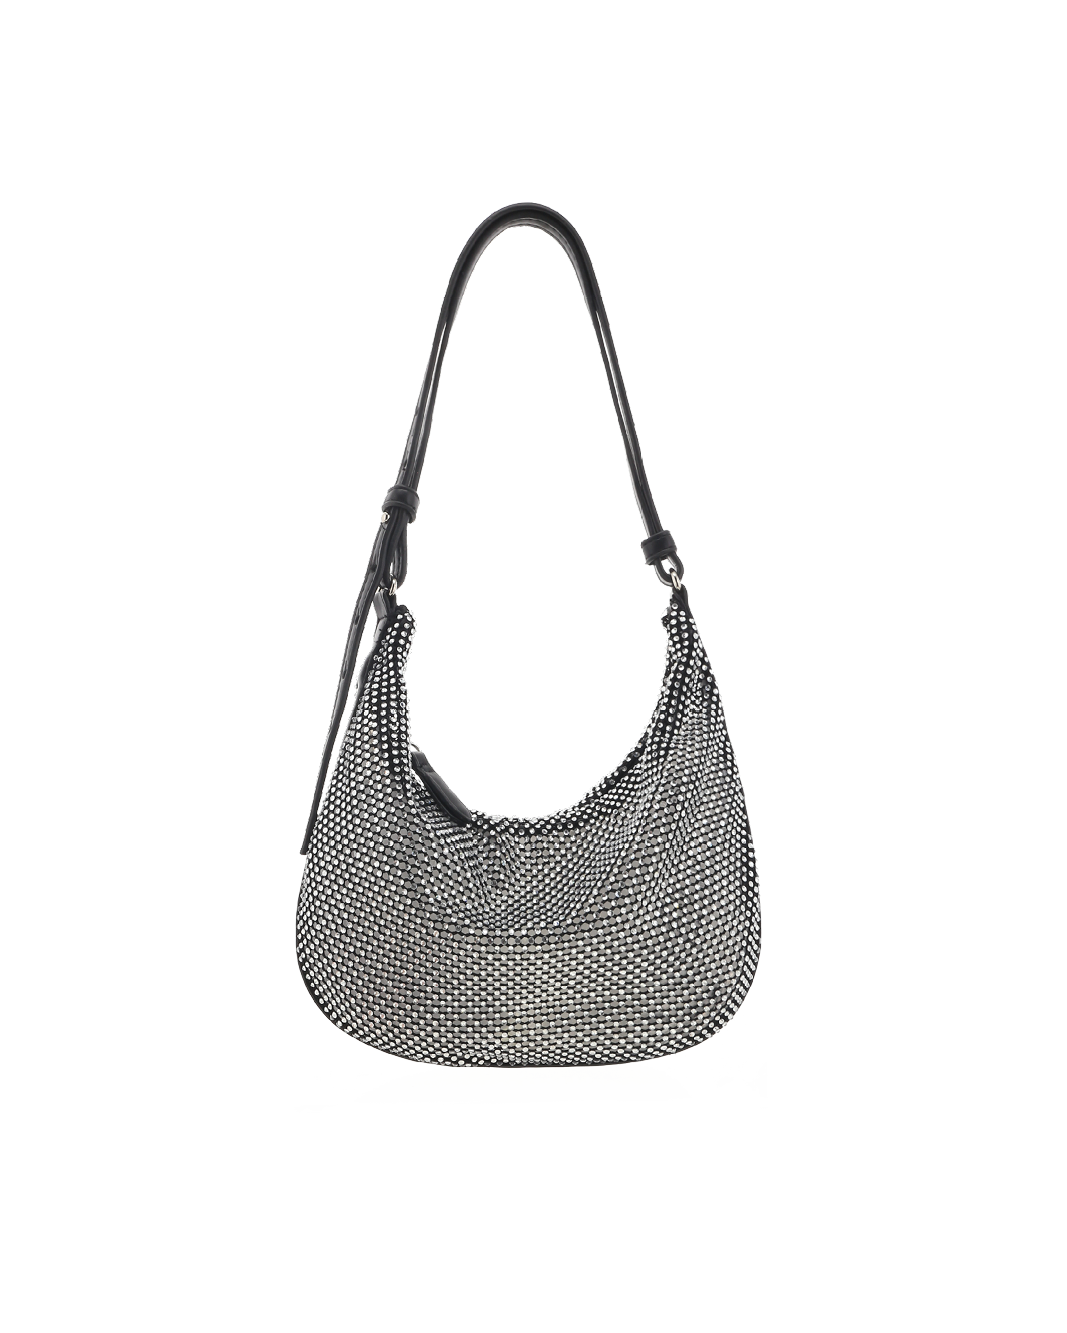 EDDA SHOULDER BAG - BLACK-Handbags-Billini-O/S-Billini